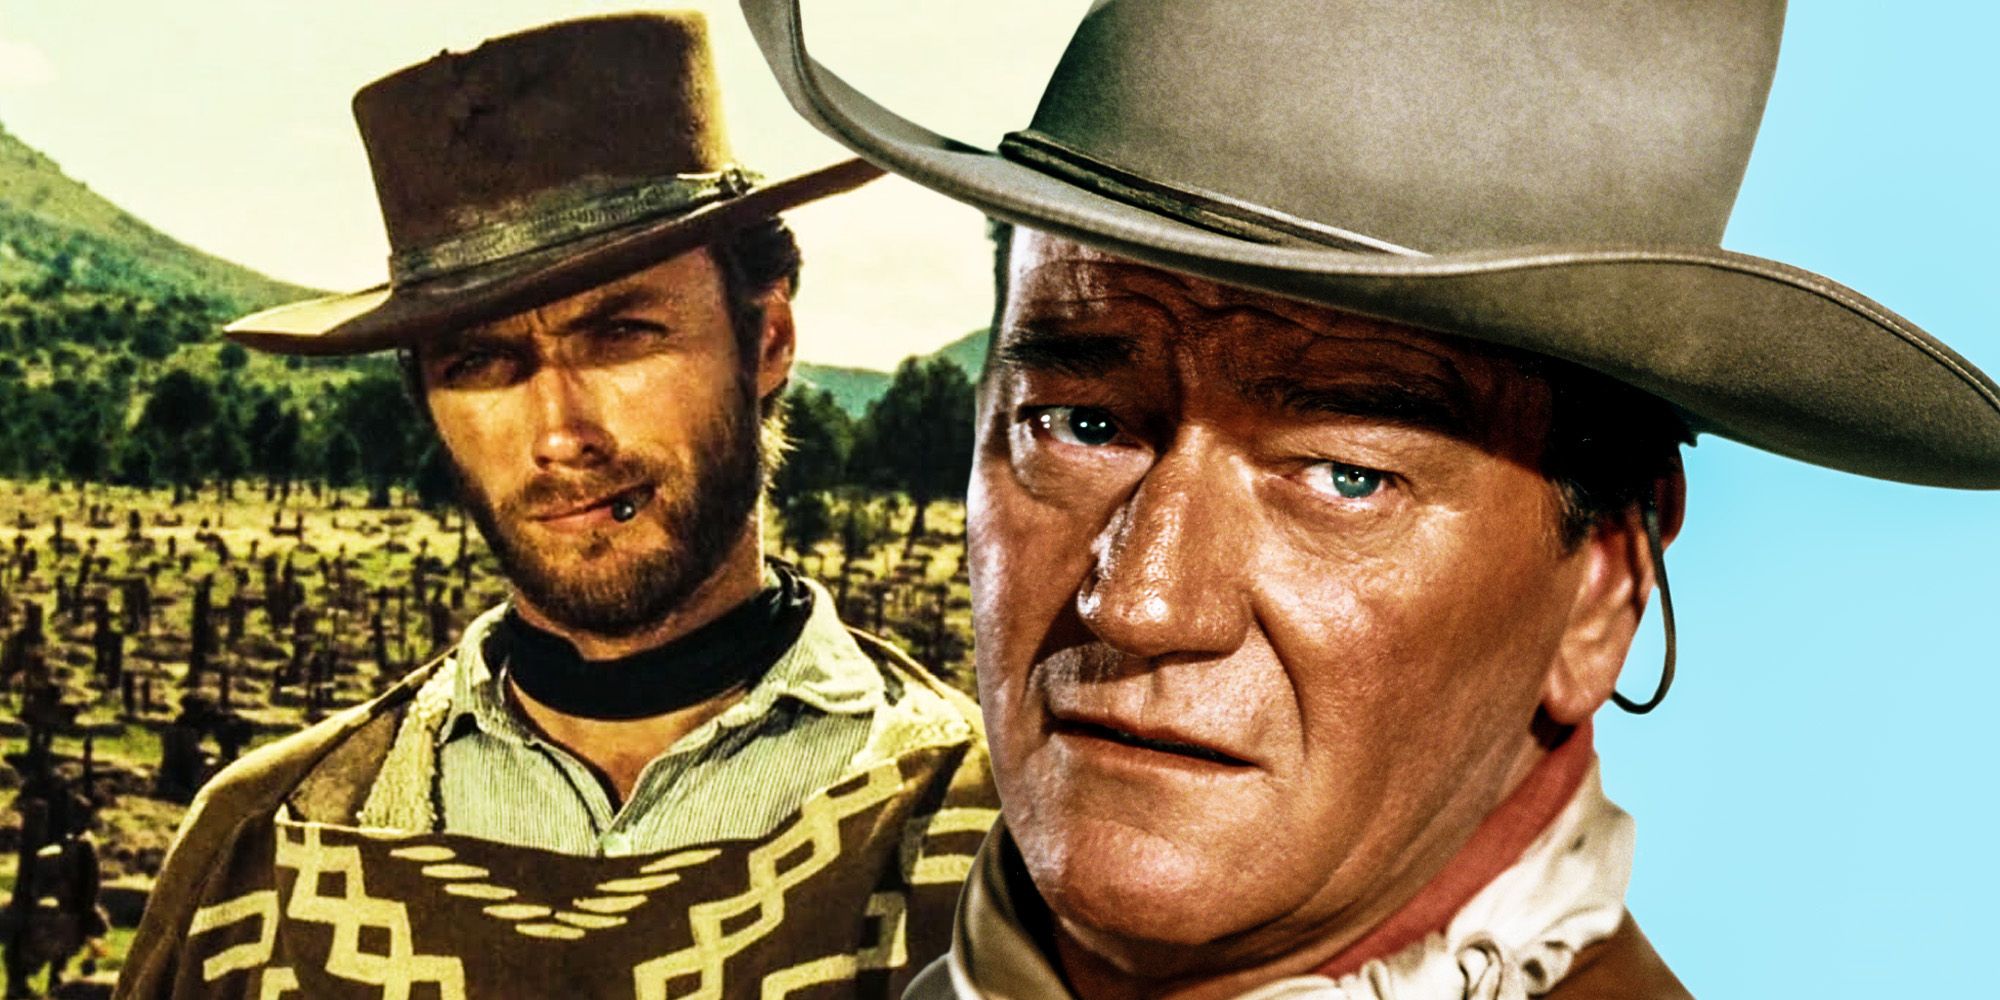 El enfrentamiento en la vida real del género occidental: explicación de la pelea entre Clint Eastwood y John Wayne